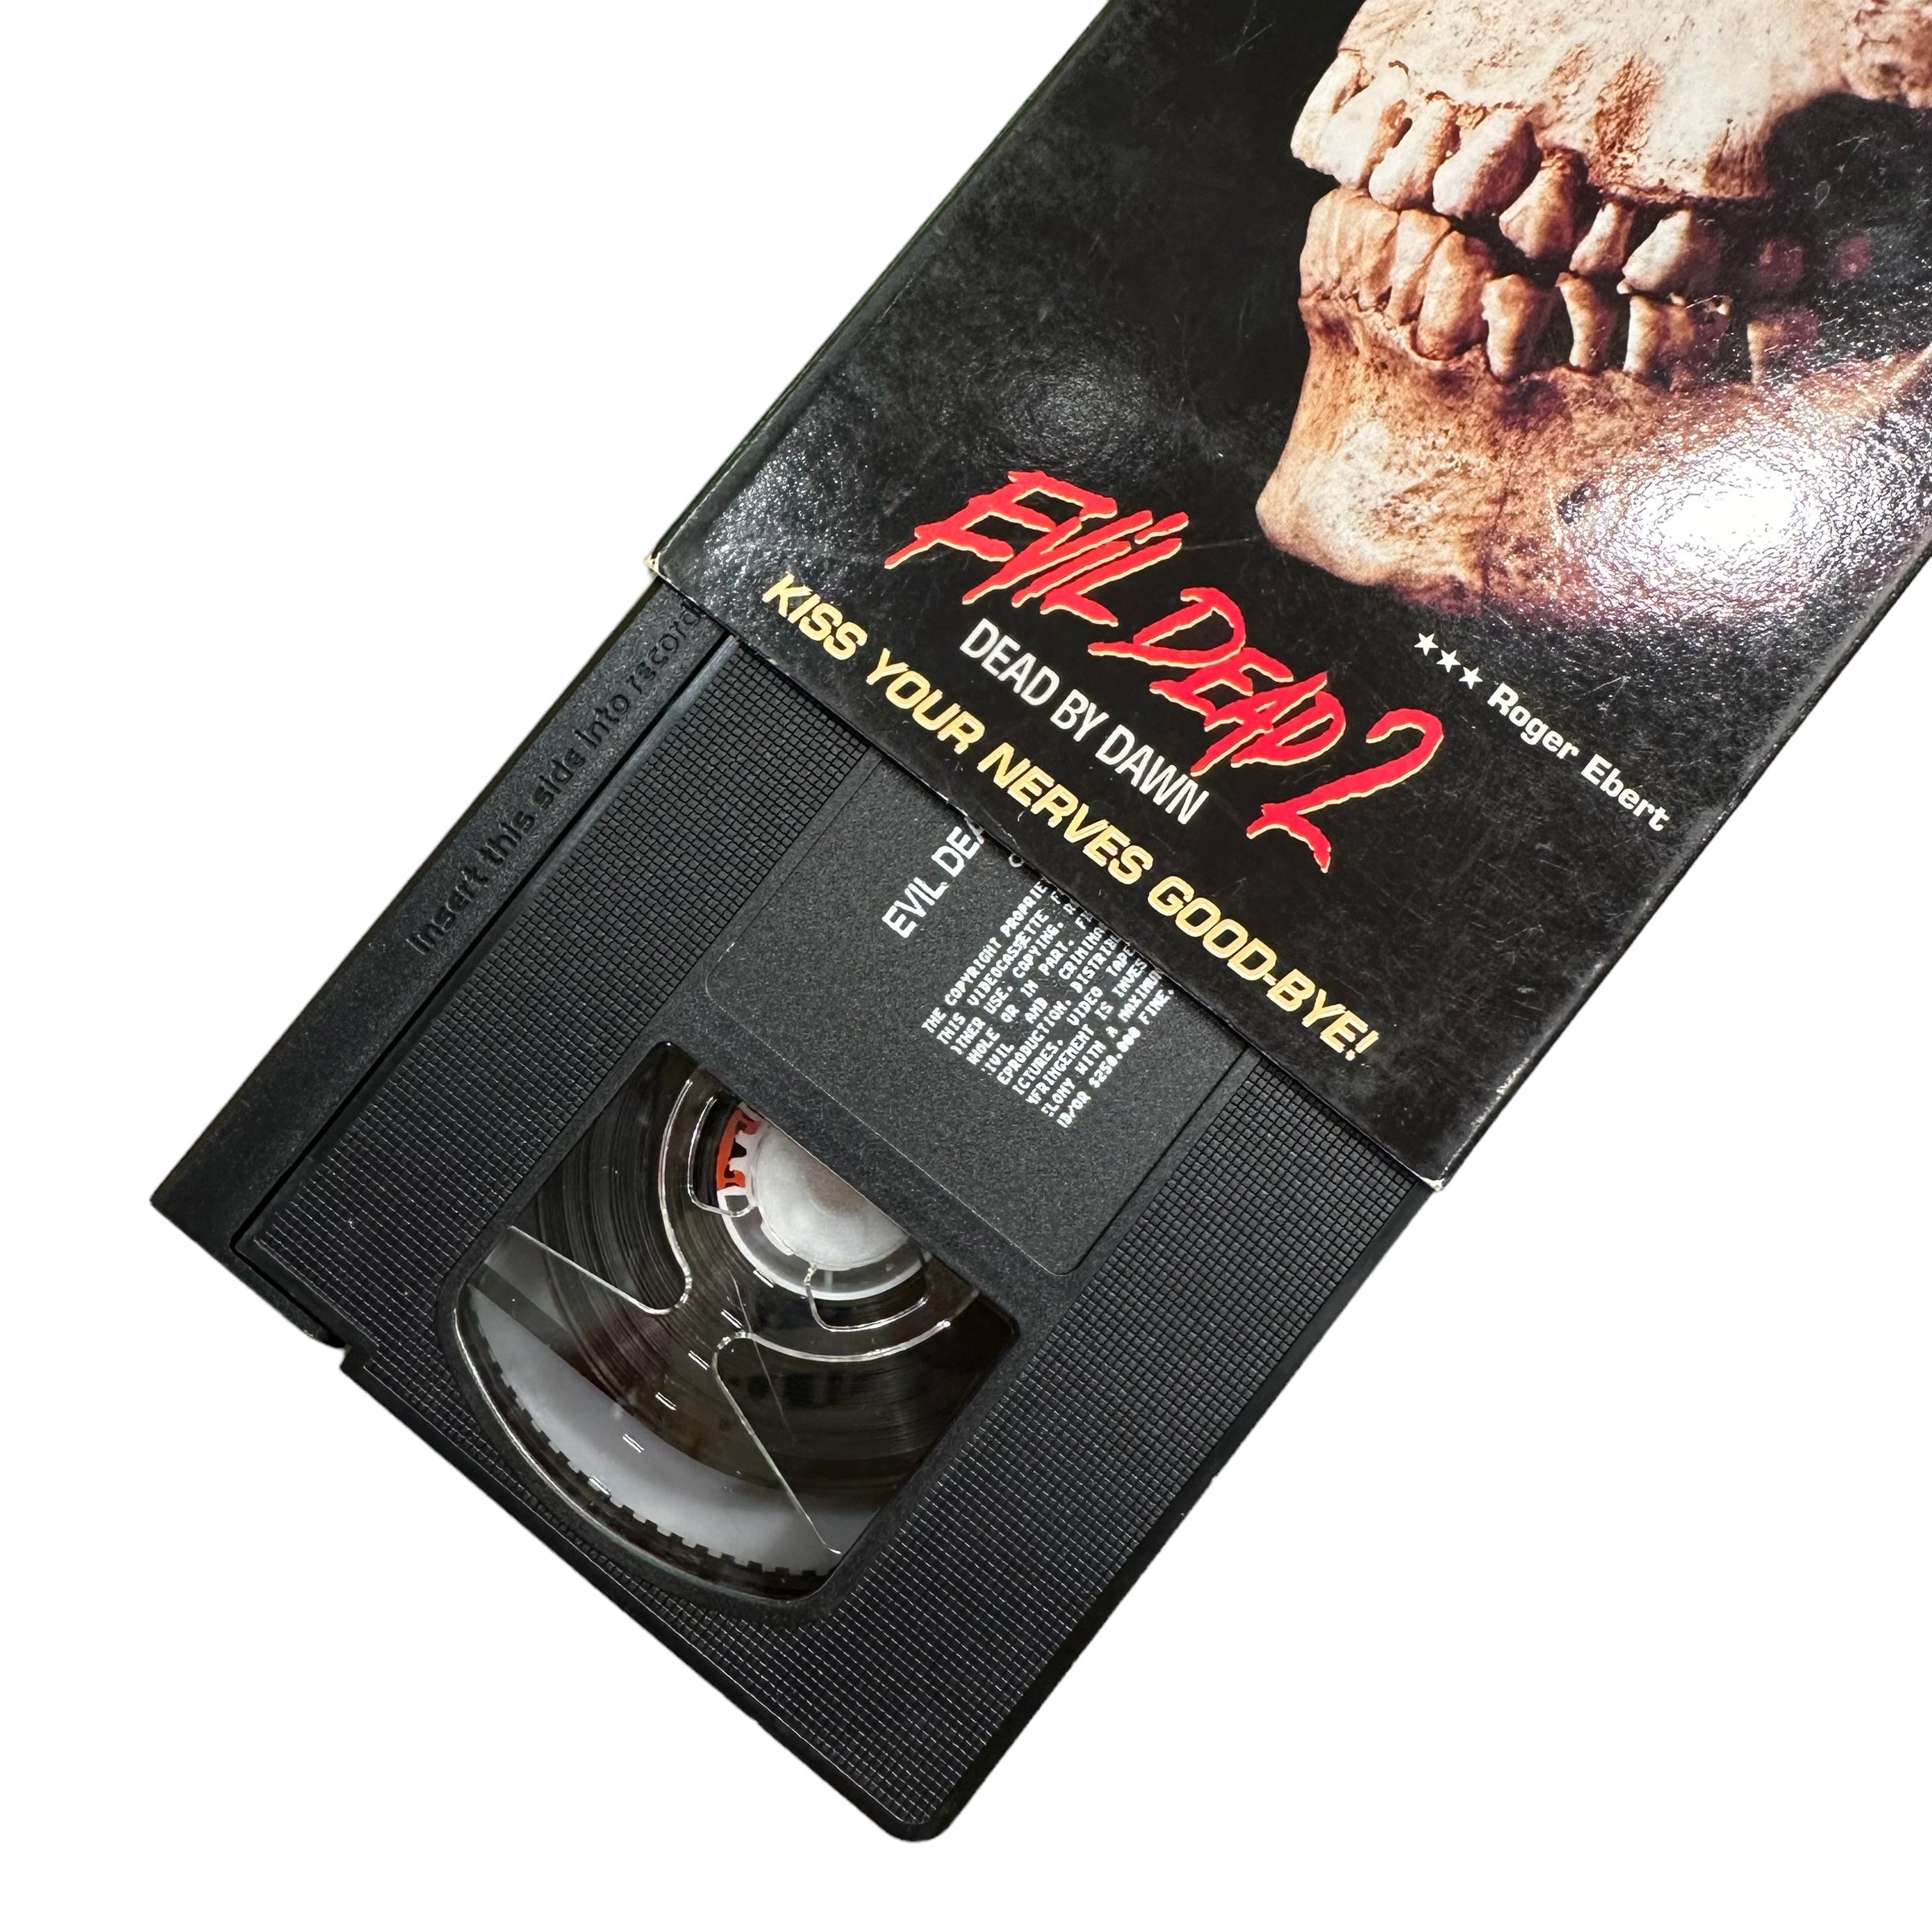 VHS ビデオテープ 輸入版 死霊のはらわた2 Evil Dead II 海外版 USA アメリカ ヴィンテージ ビデオ 紙ジャケ